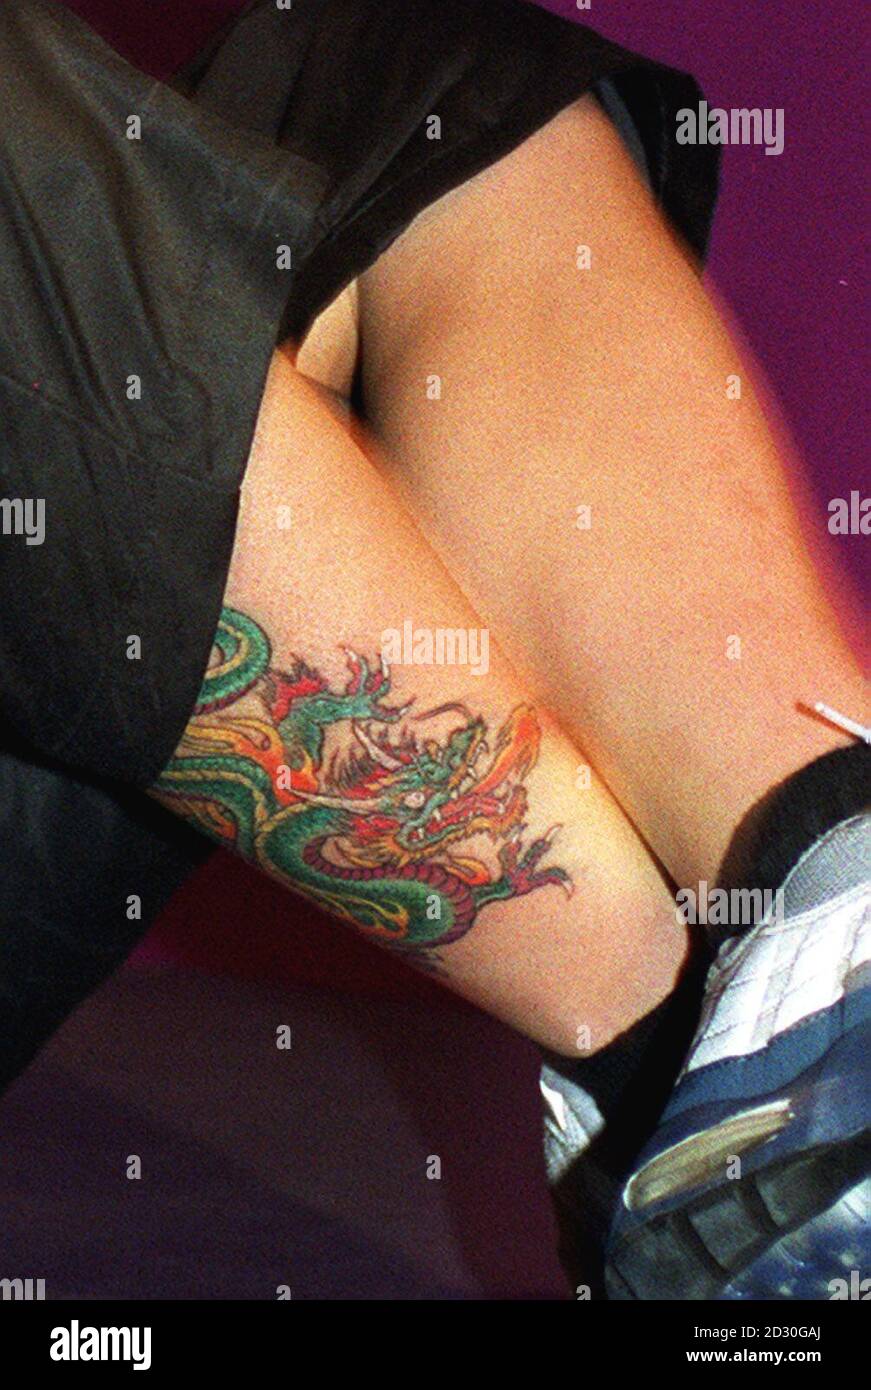 Un'idea ravvicinata del nuovo tatuaggio di Spice Girl Mel C. Il drago è stato rivelato durante il lancio della prima rete radio digitale commerciale della Gran Bretagna a Londra. Fatturato come la più grande rete radio digitale del mondo, ha già una copertura del 69% della Gran Bretagna. Foto Stock